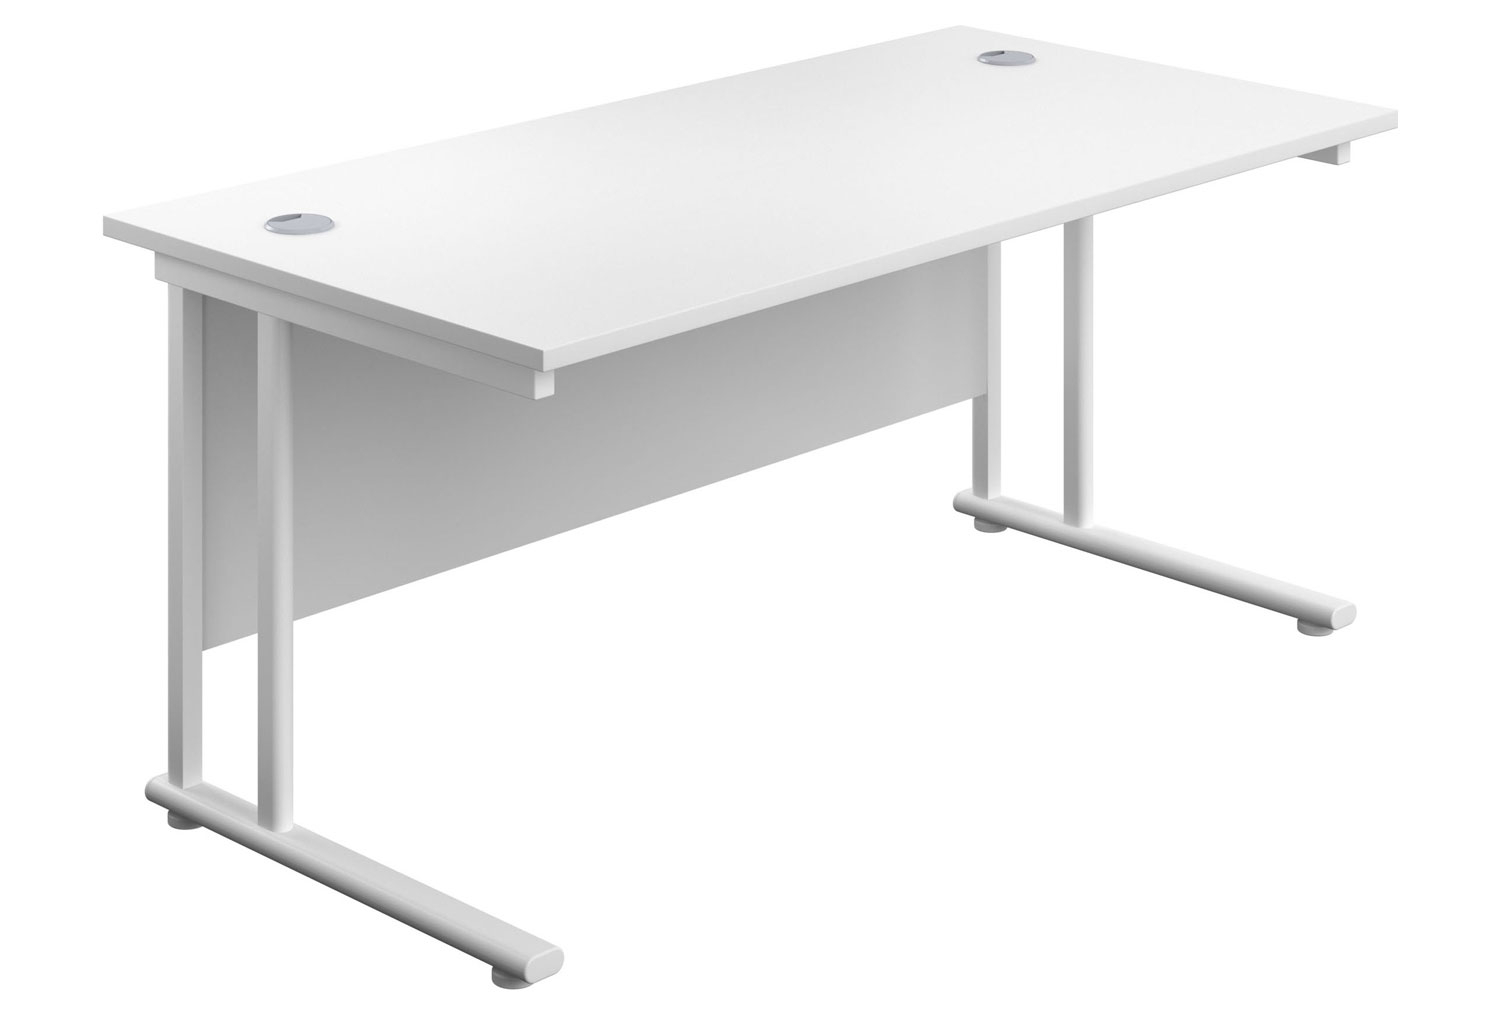 Impulse Rectangular Office Desk, 140wx80dx73h (cm), White Frame, White, Express Delivery